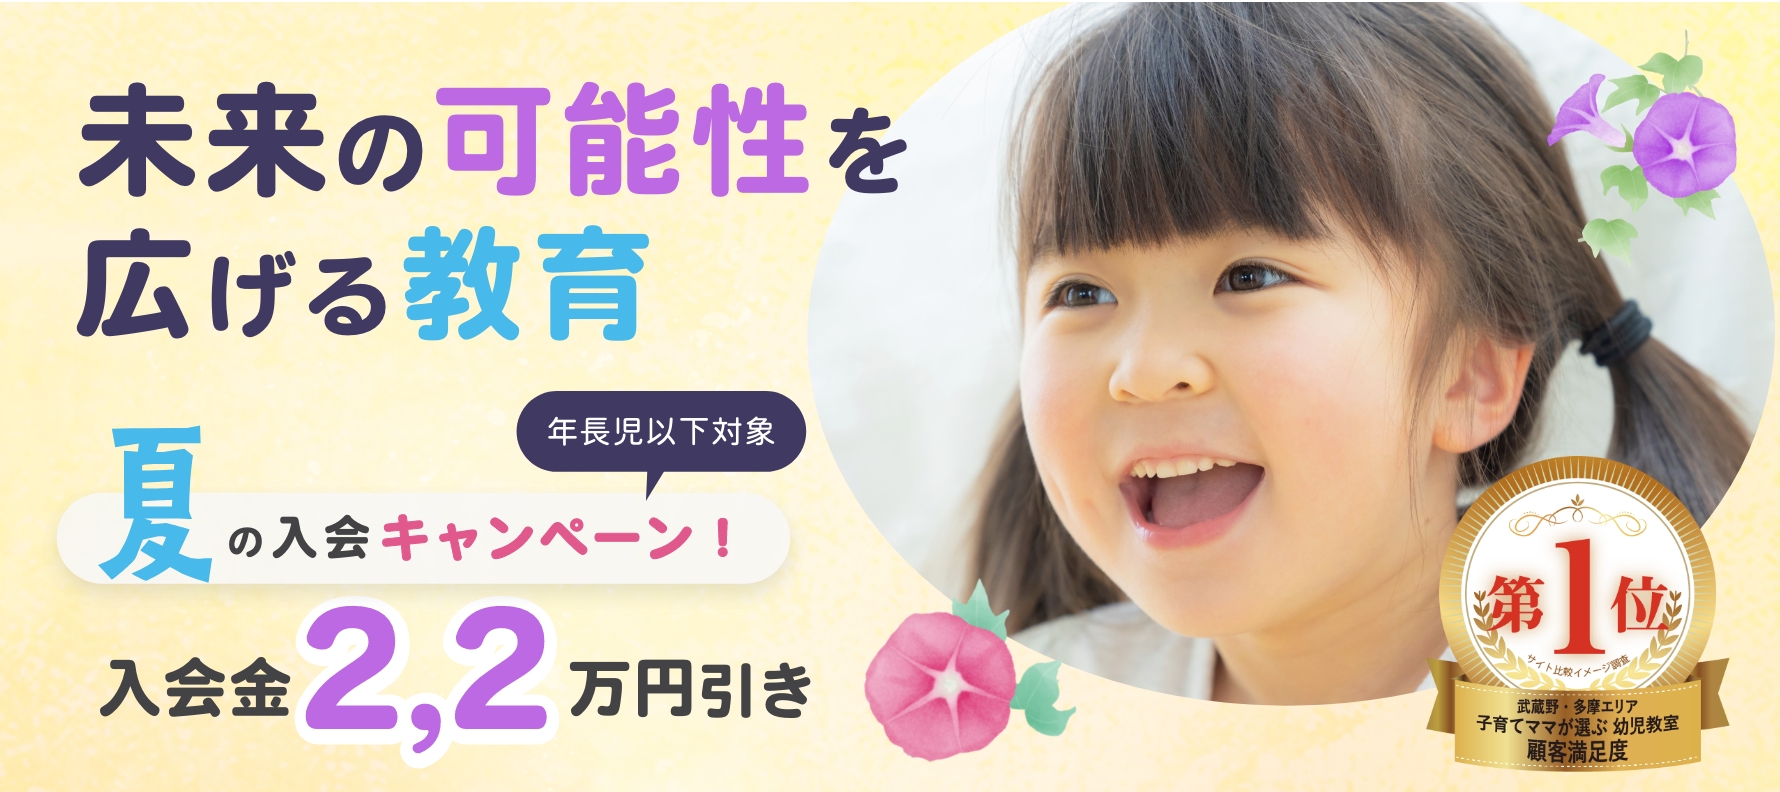 夏の国分寺幼児教室入会キャンペーン